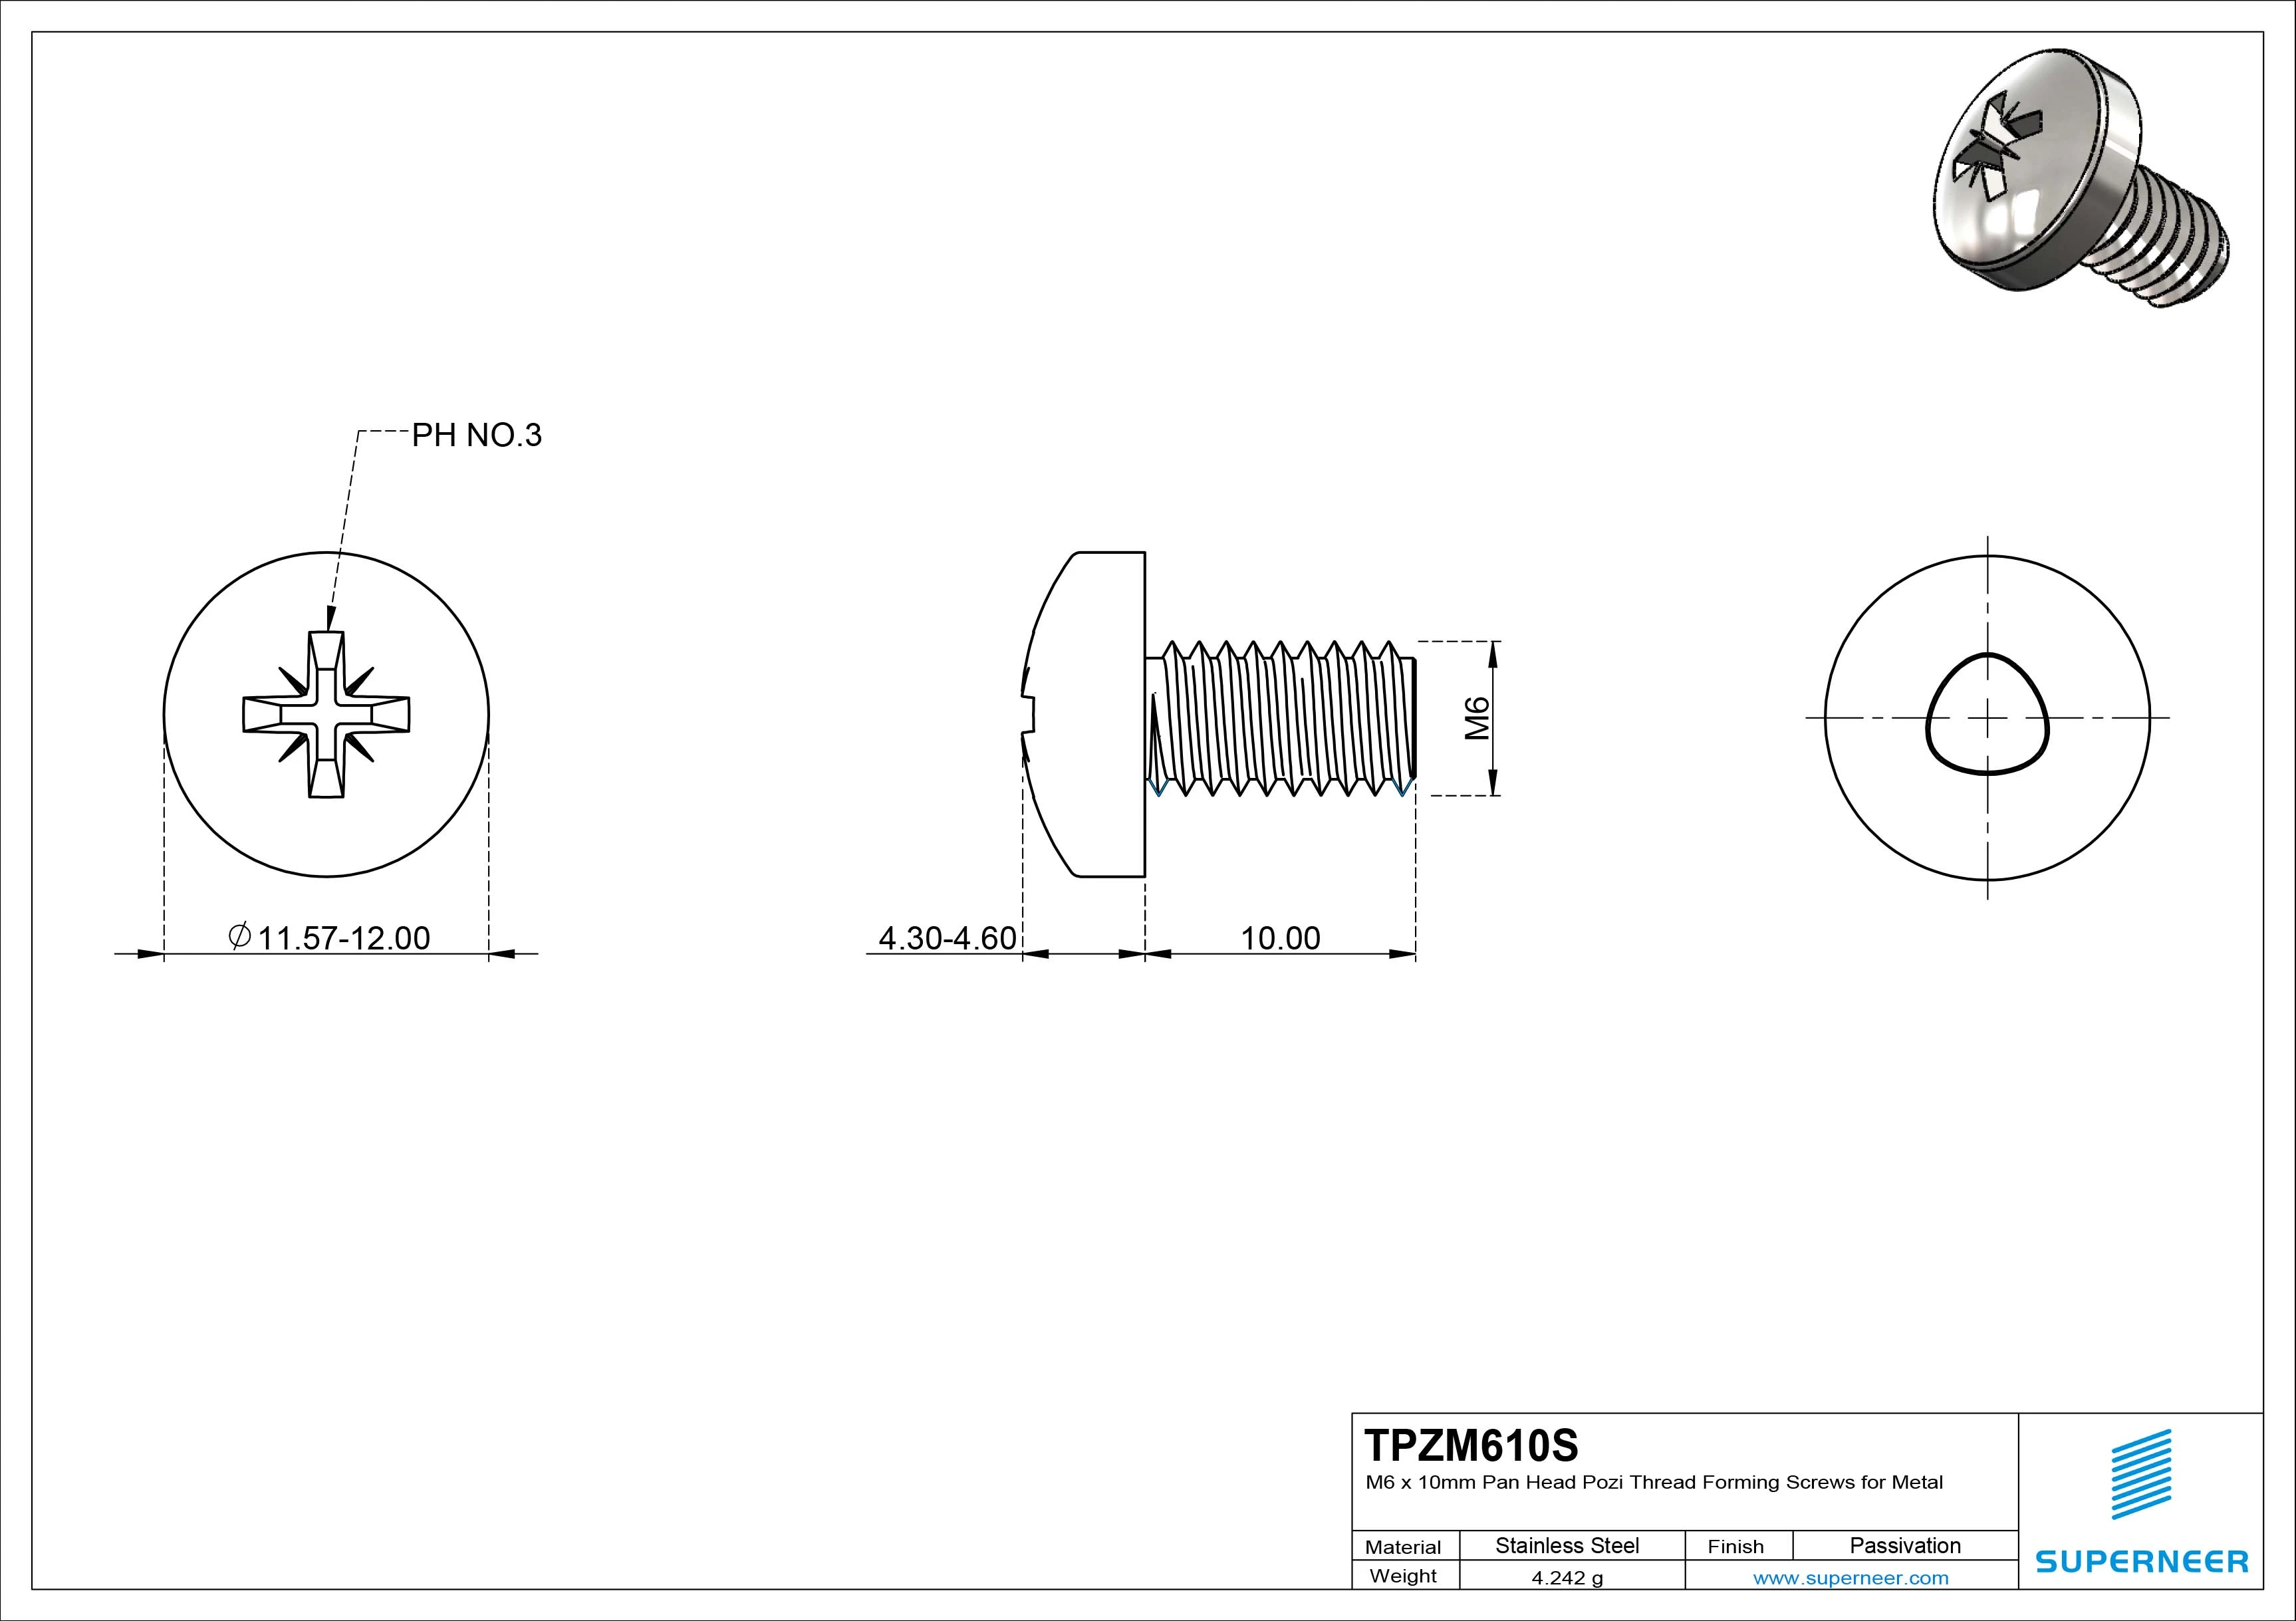 M6 × 10mm Pan Head Pozi Thread Forming Screws for Metal SUS304 Stainless Steel Inox